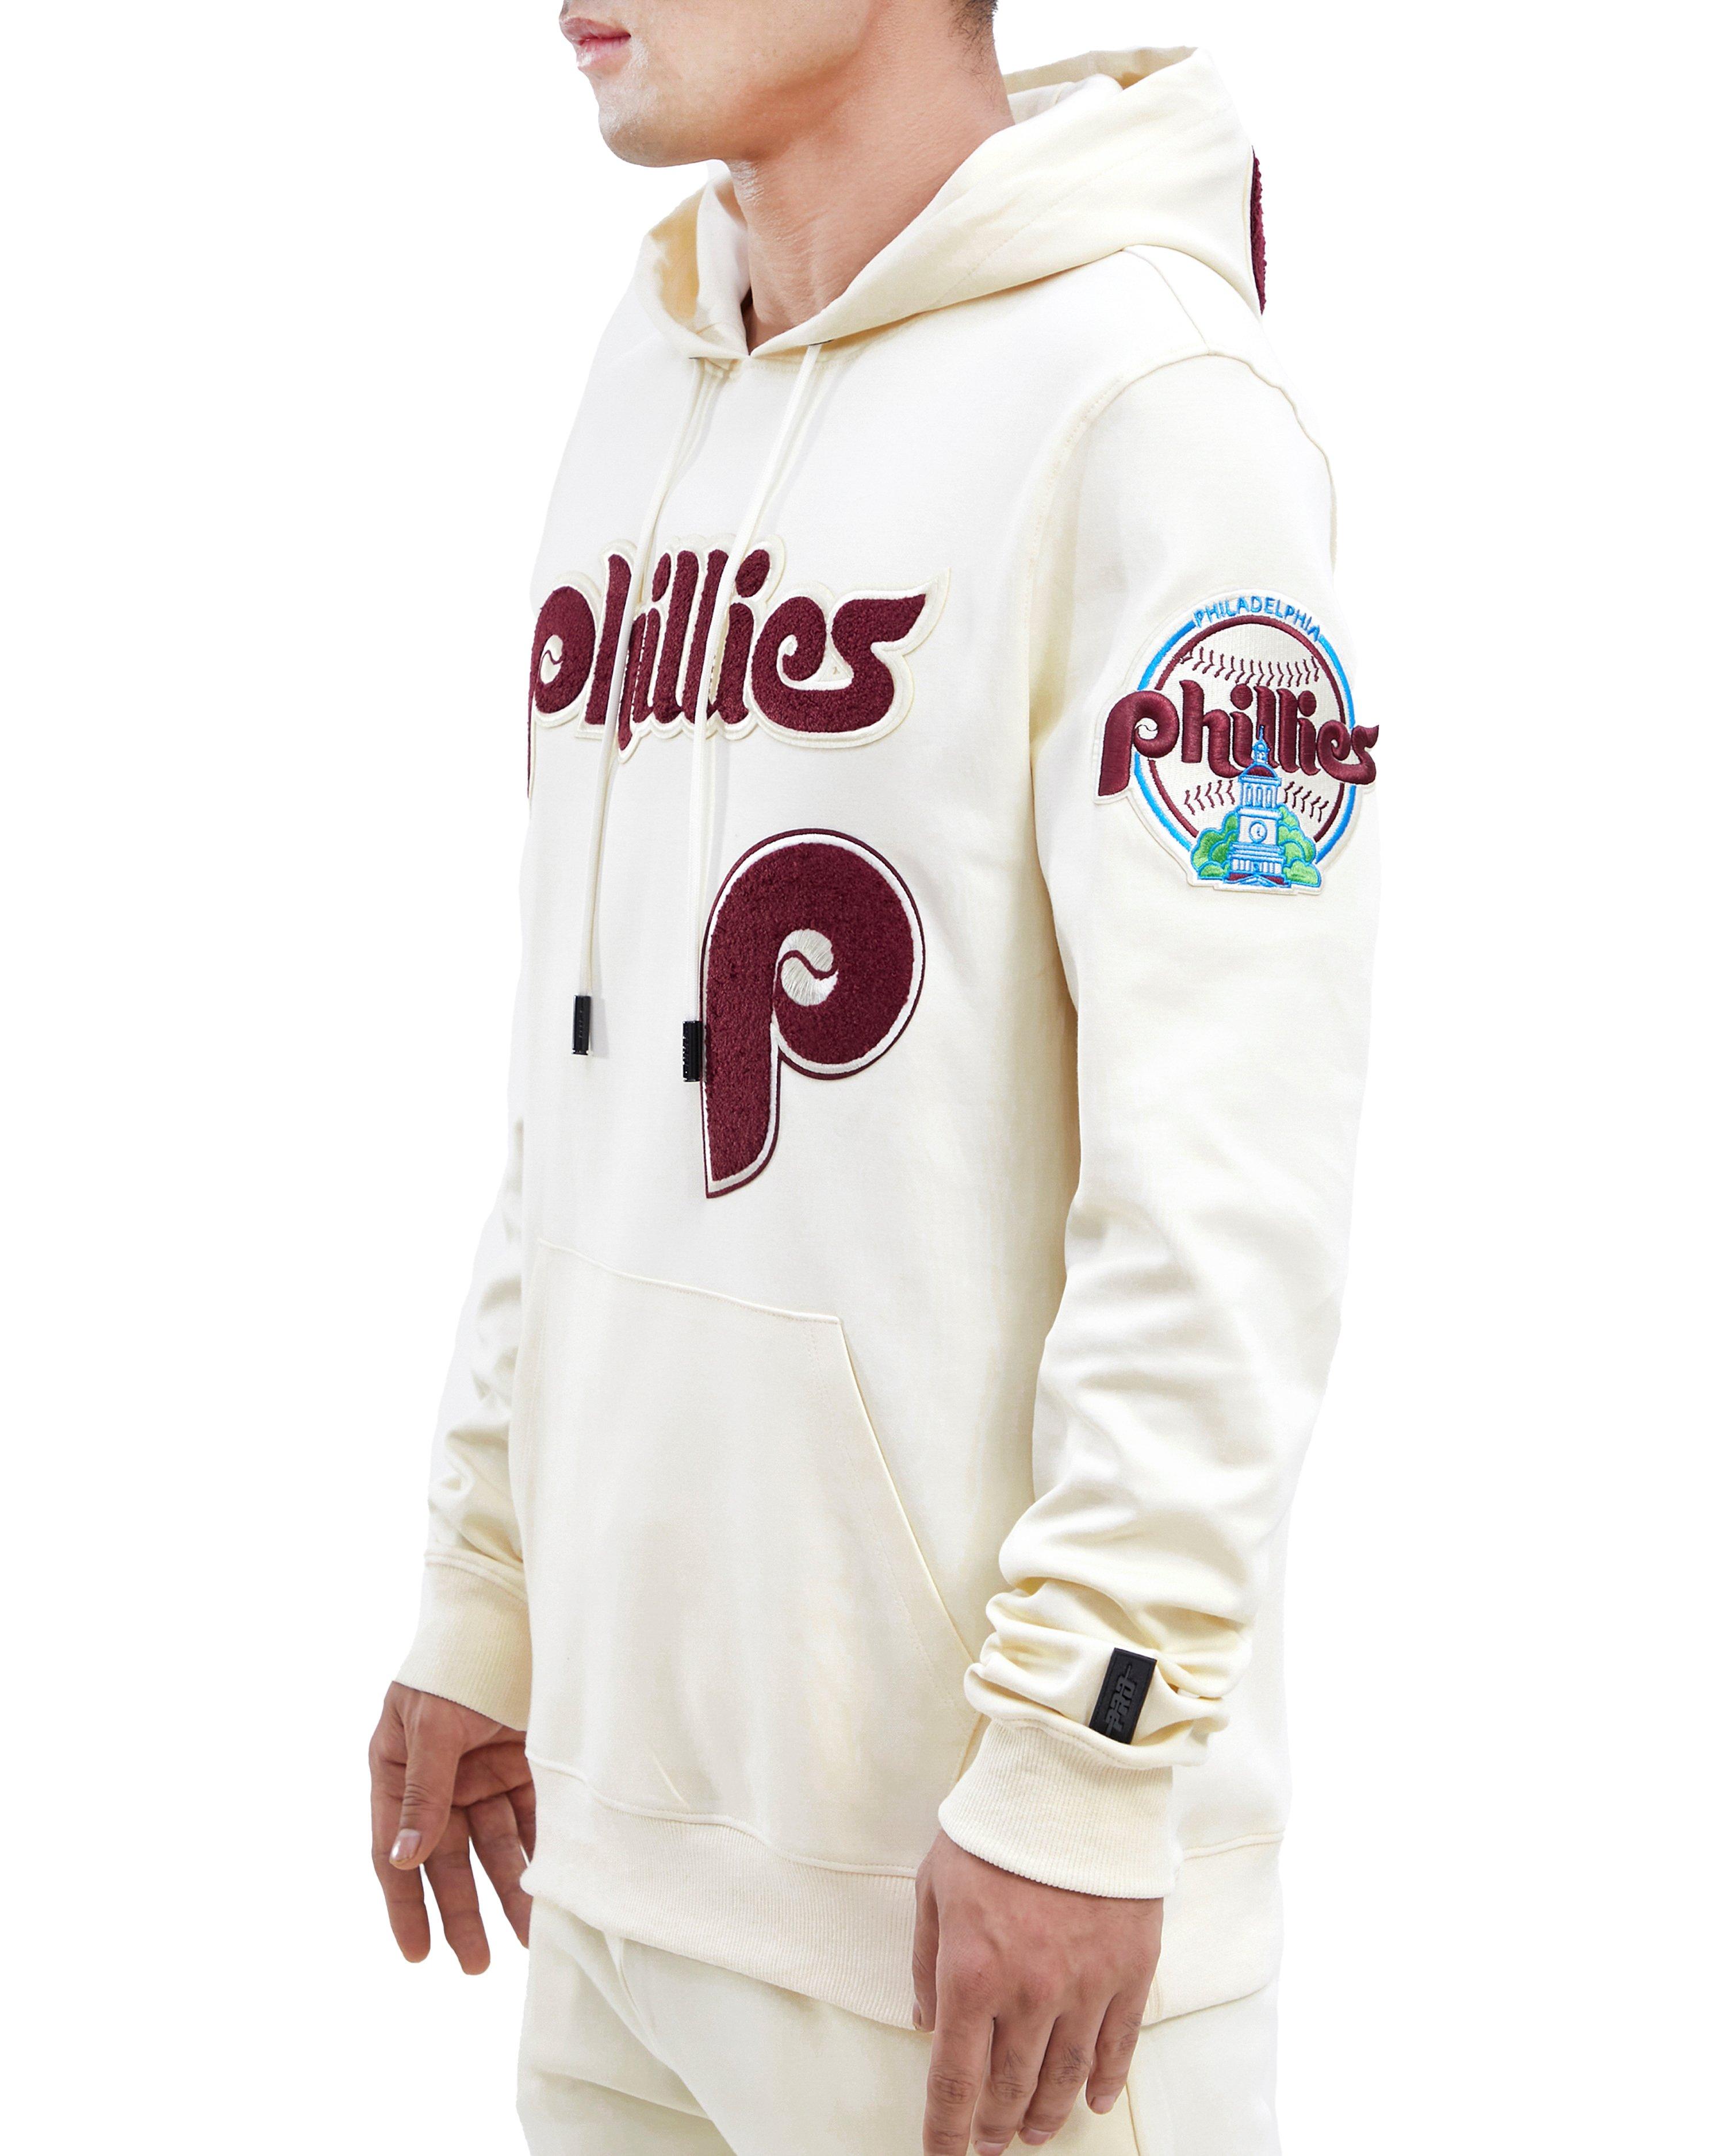 Men's Pro Standard White Philadelphia Phillies Team Logo T-Shirt